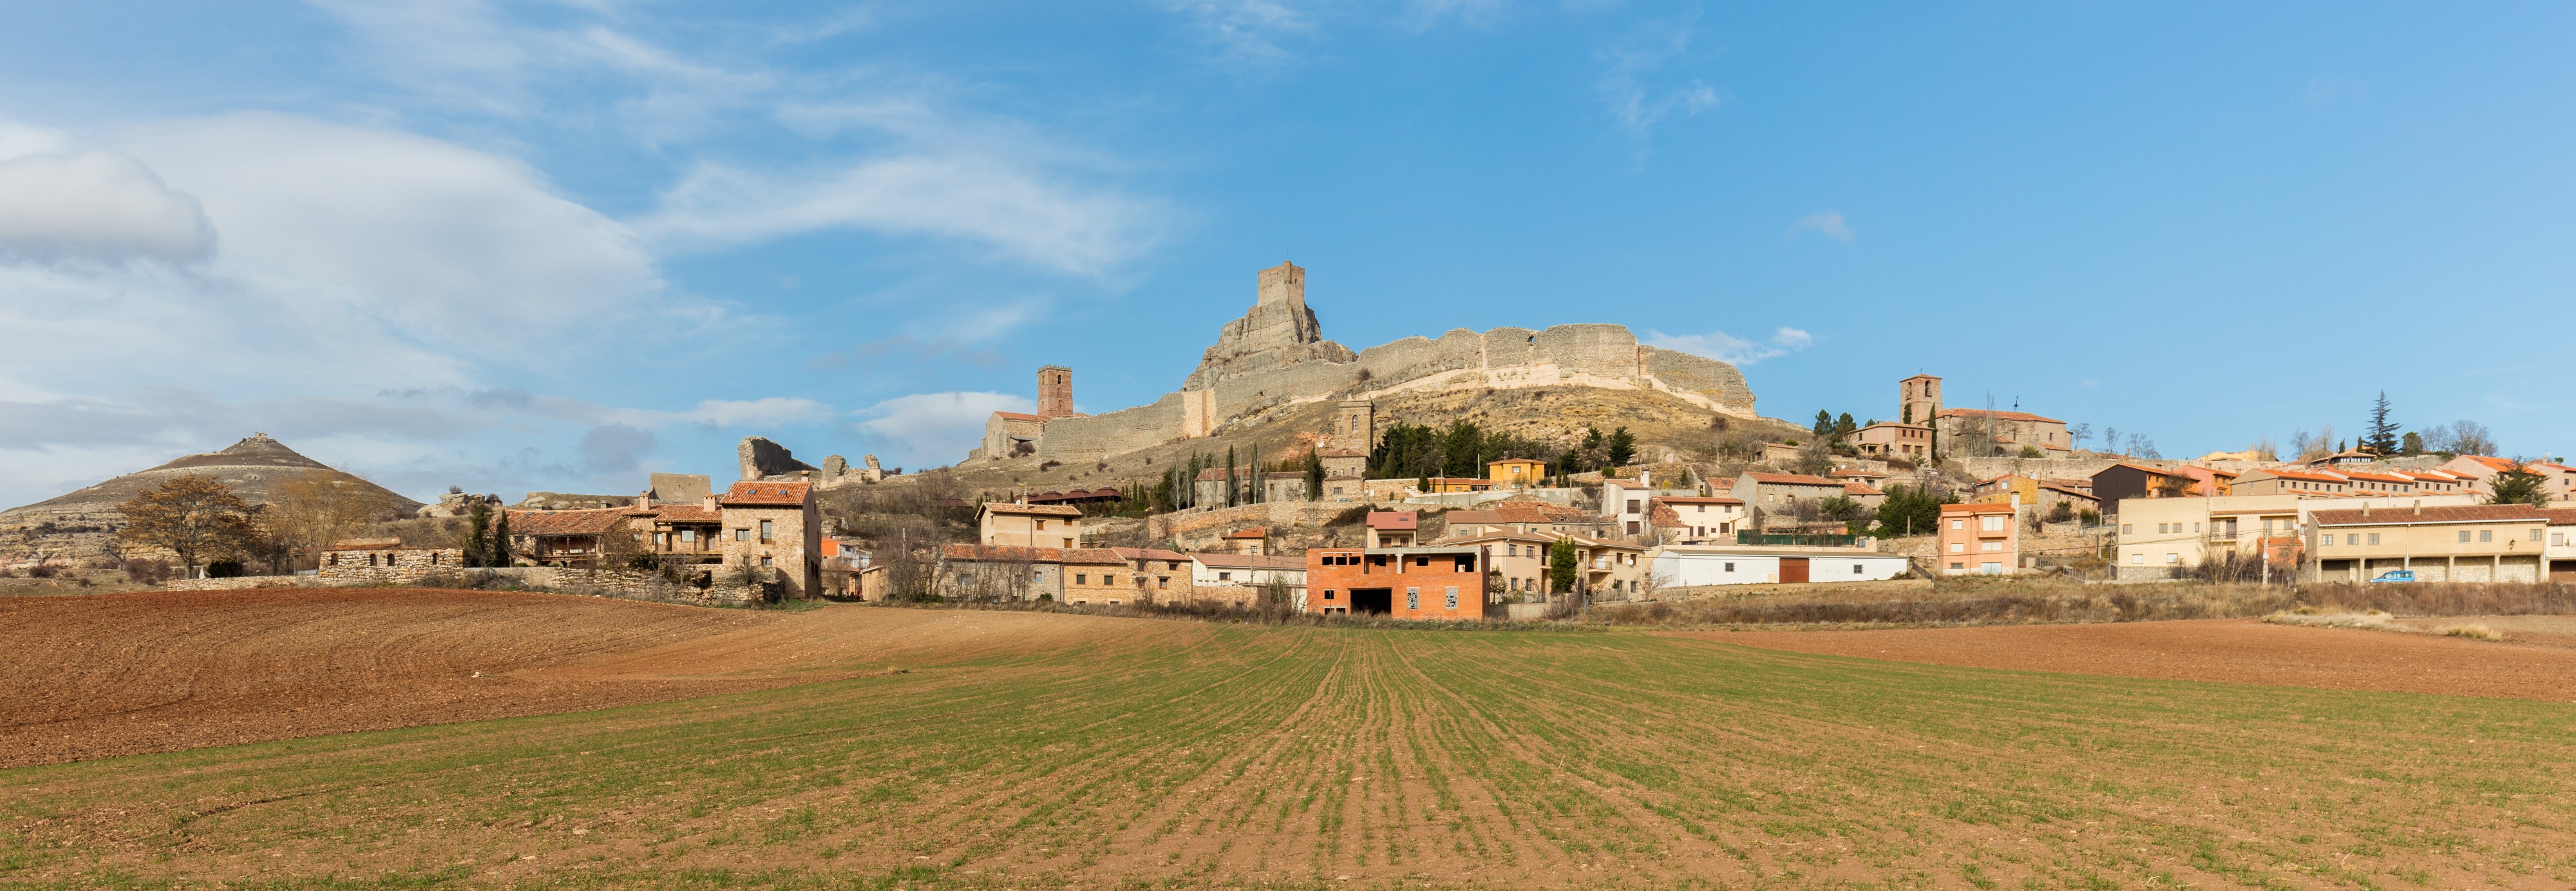 Vista de Atienza, España, 2015-12-28, DD 148